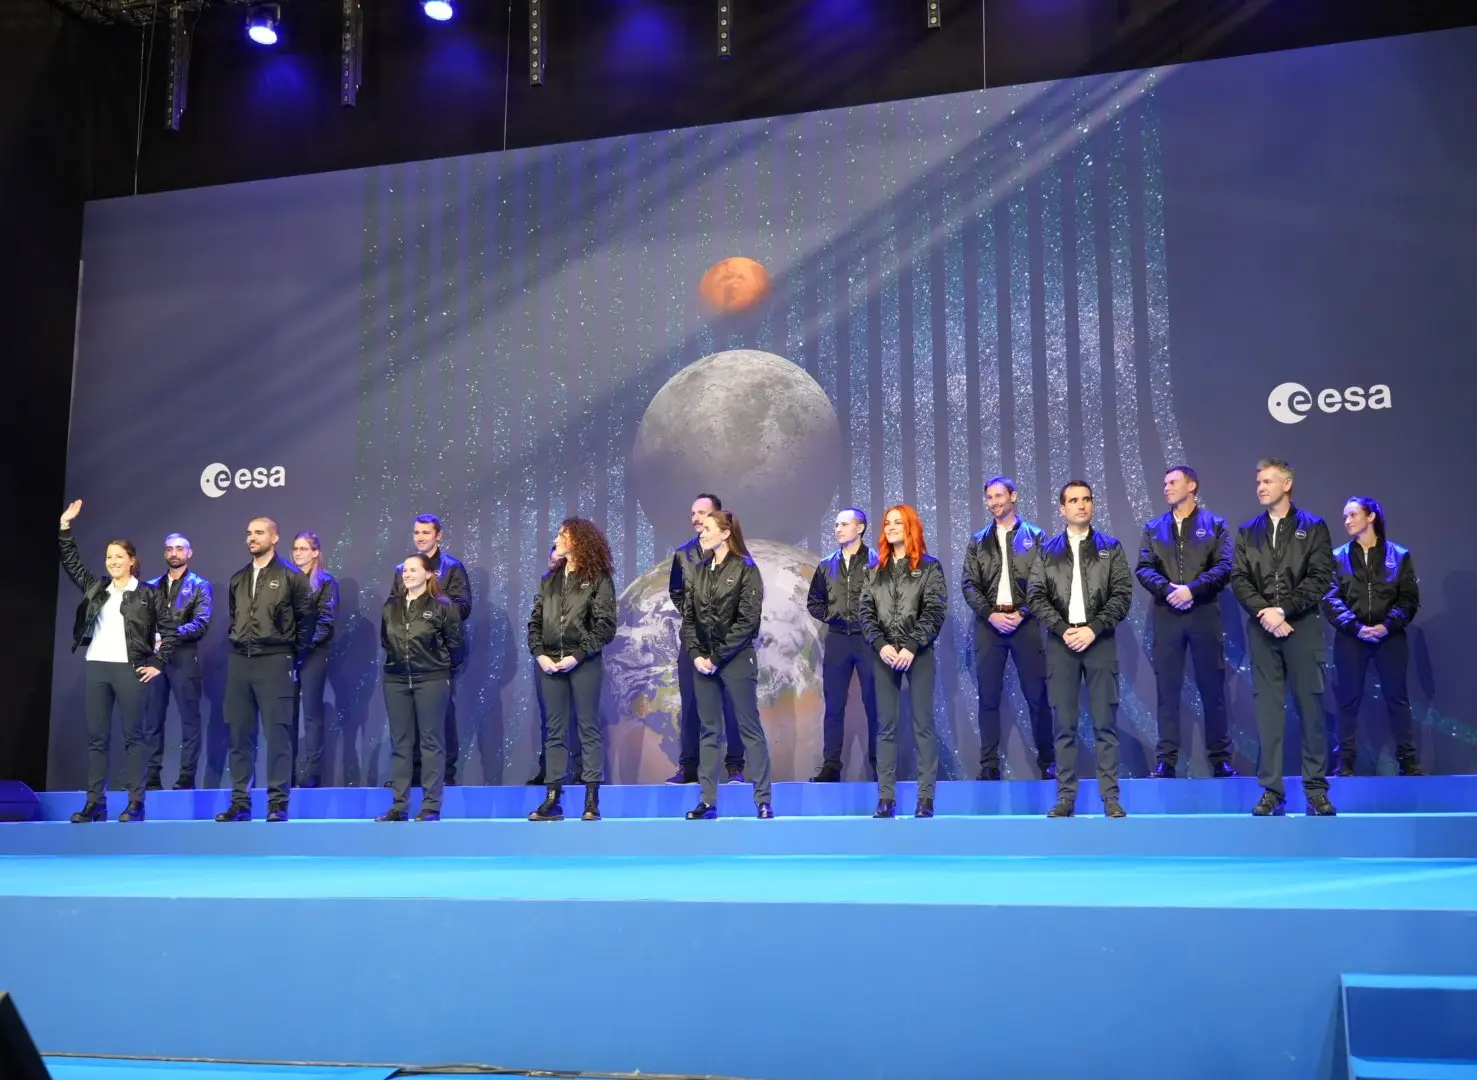 Fotografia de família dos 17 novos astronautas selecionados pela Agência Espacial Europeia: cinco integram a equipa titular, 11 ficam na reserva e o britânico John McFall ocupa a vaga para o primeiro paraastronauta da História